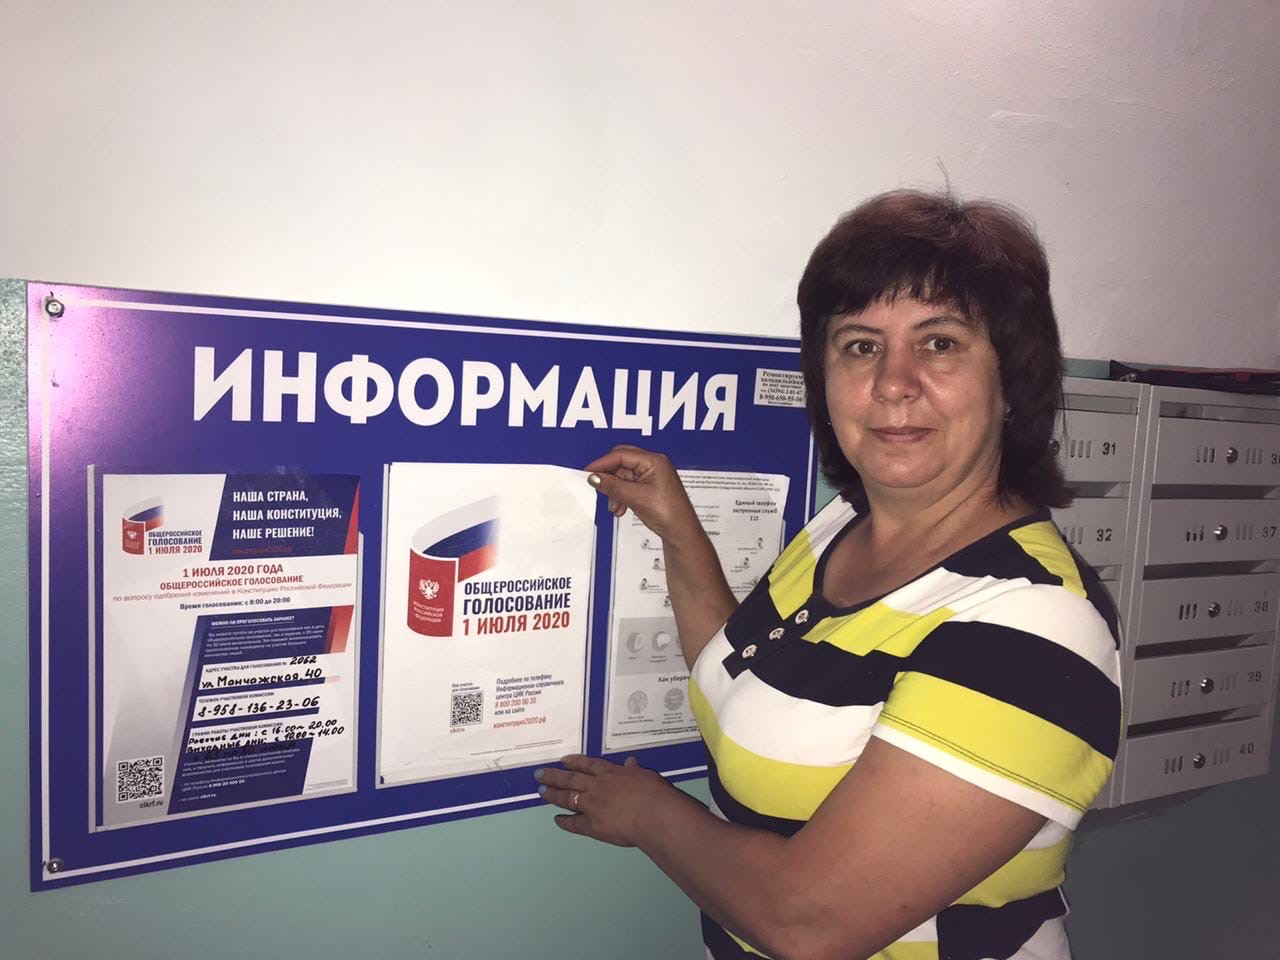 Где можно проголосовать. Как можно проголосовать. Участковая избирательная комиссия номер 1 Москва. Можно проголосовать 2 раза